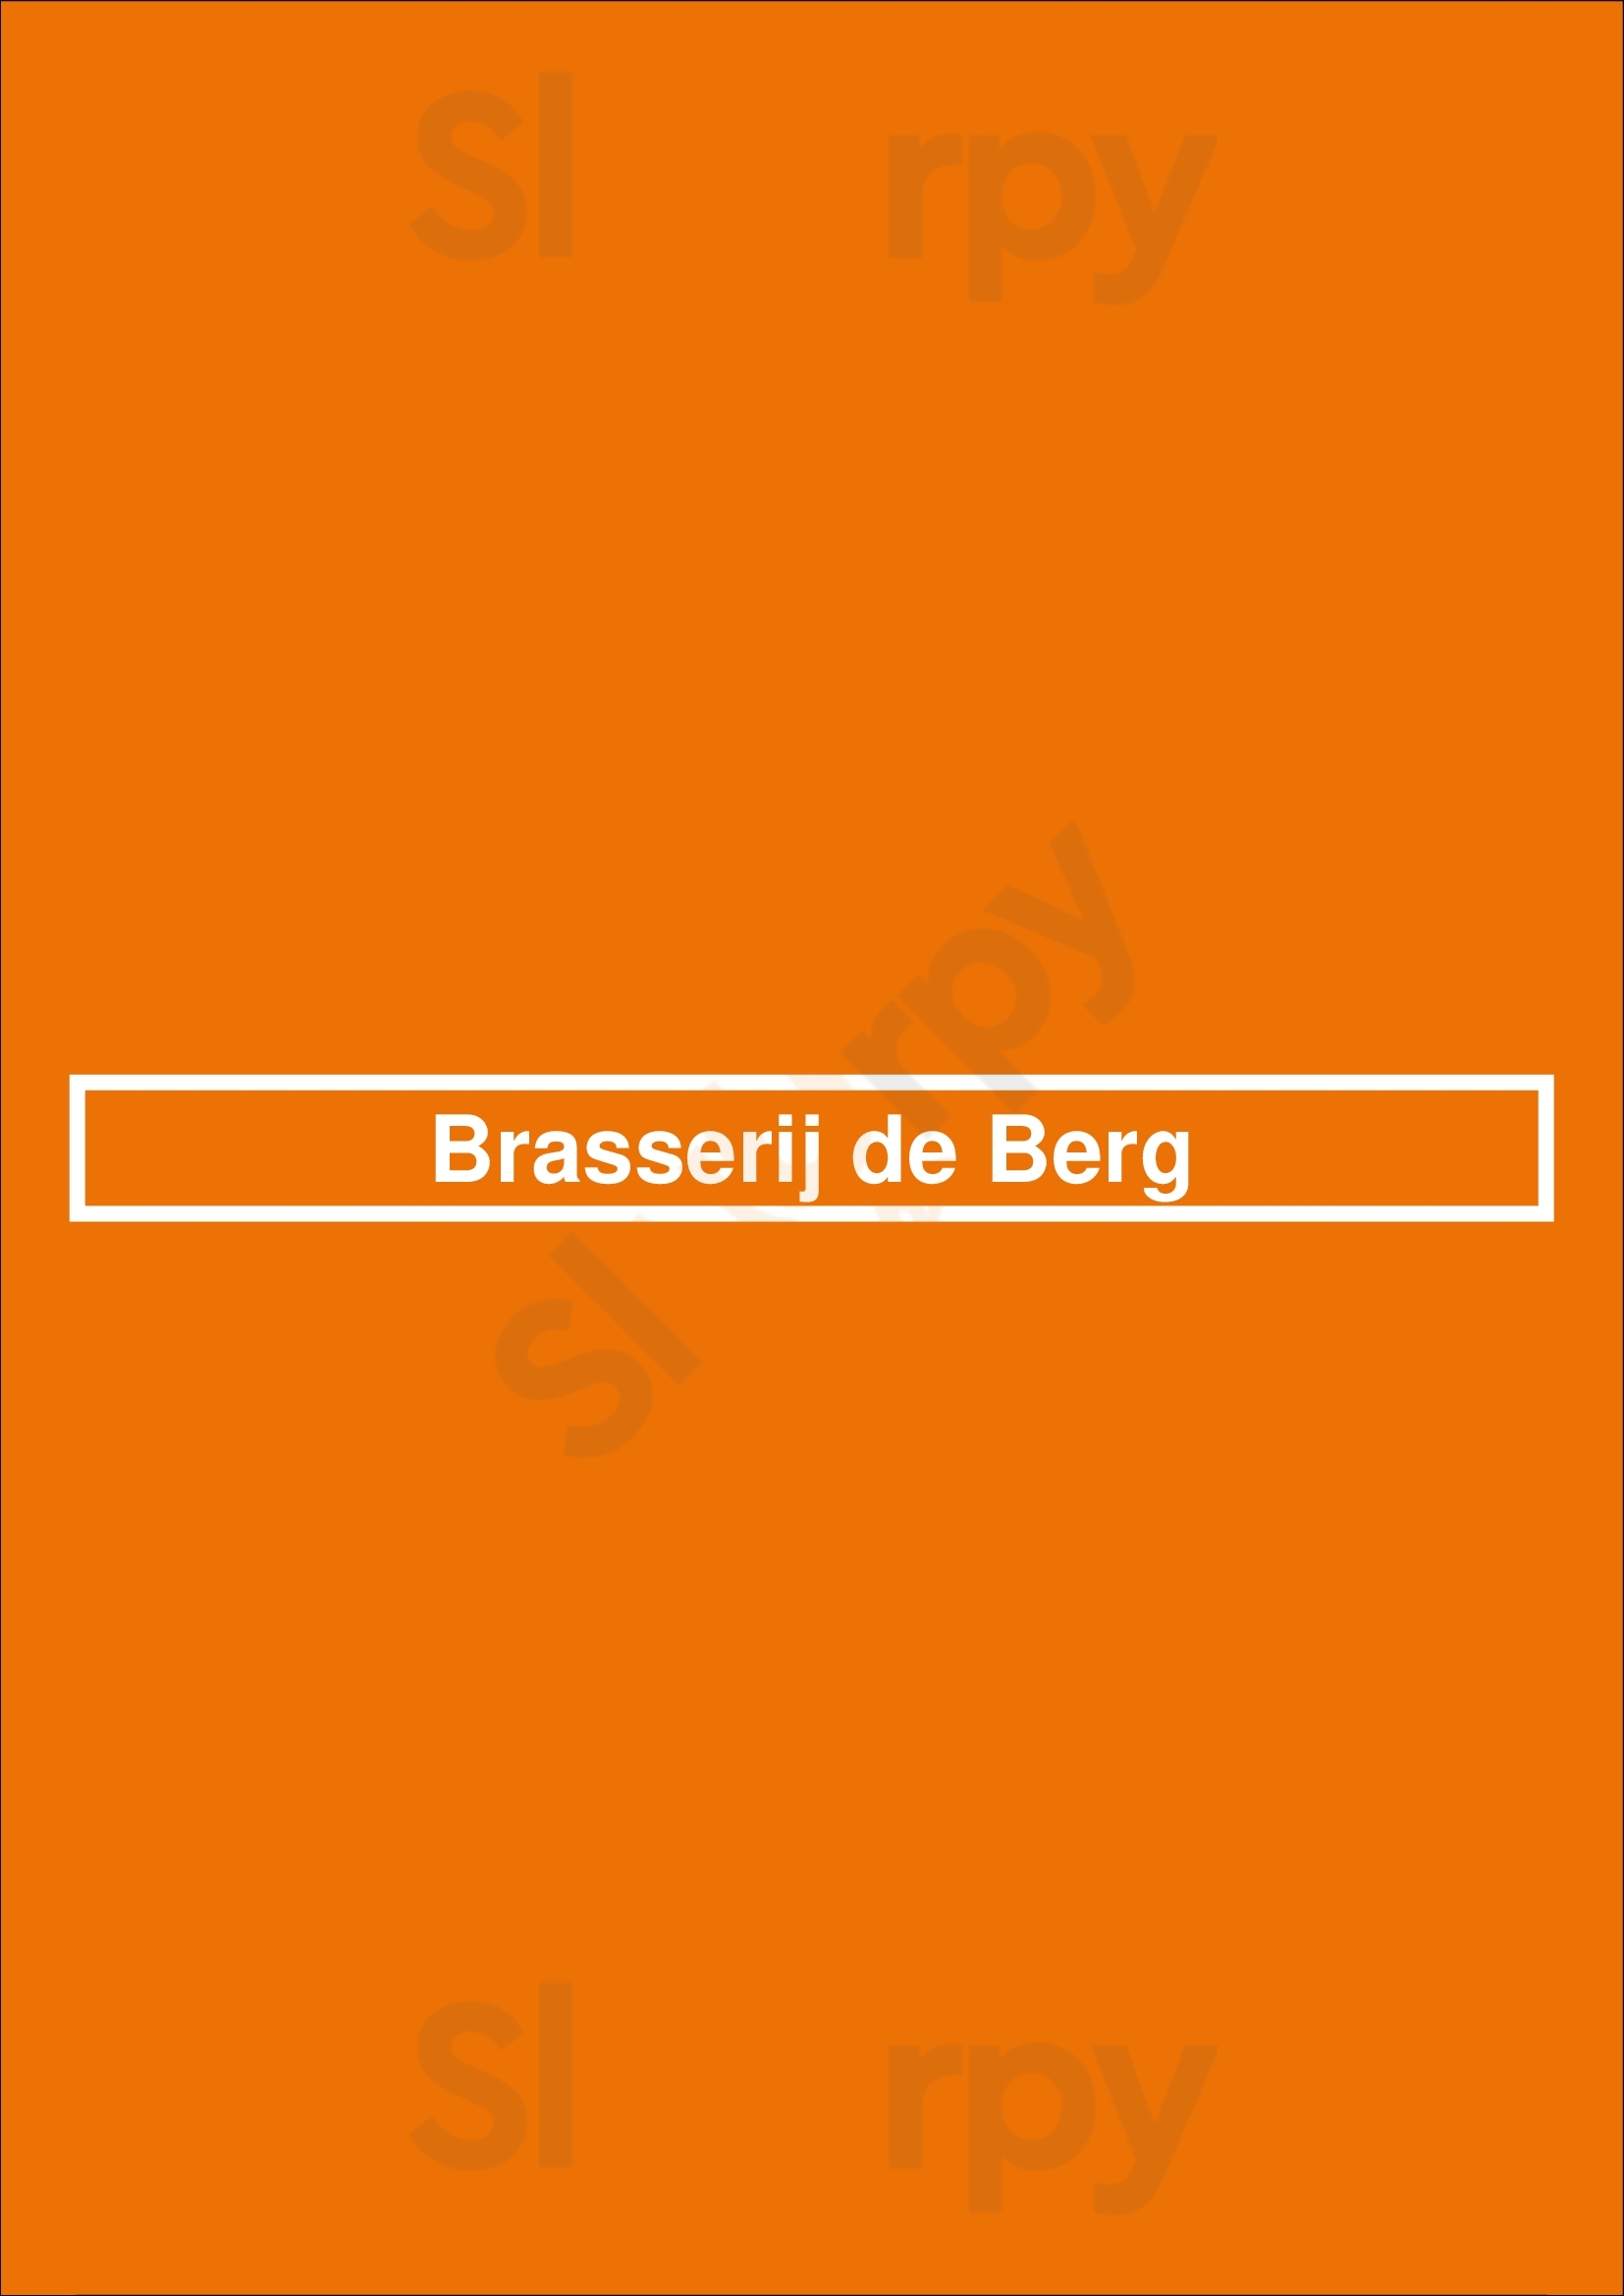 Brasserij De Berg Nieuwerkerk aan den IJssel Menu - 1